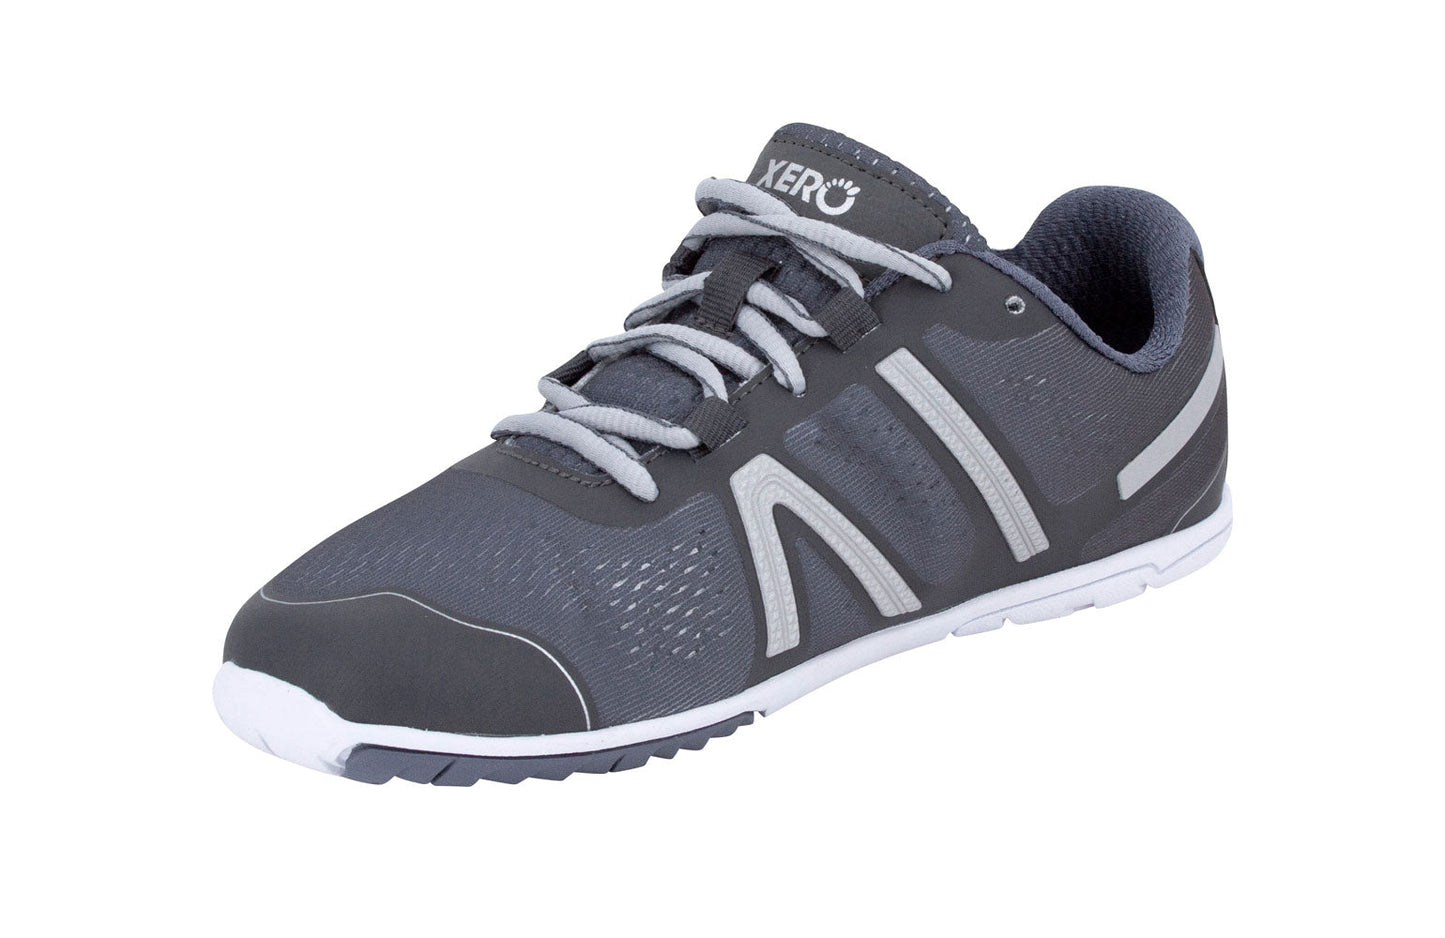 Xero Shoes HFS Womens barfods træningssko/løbesko til kvinder i farven steel gray, vinklet